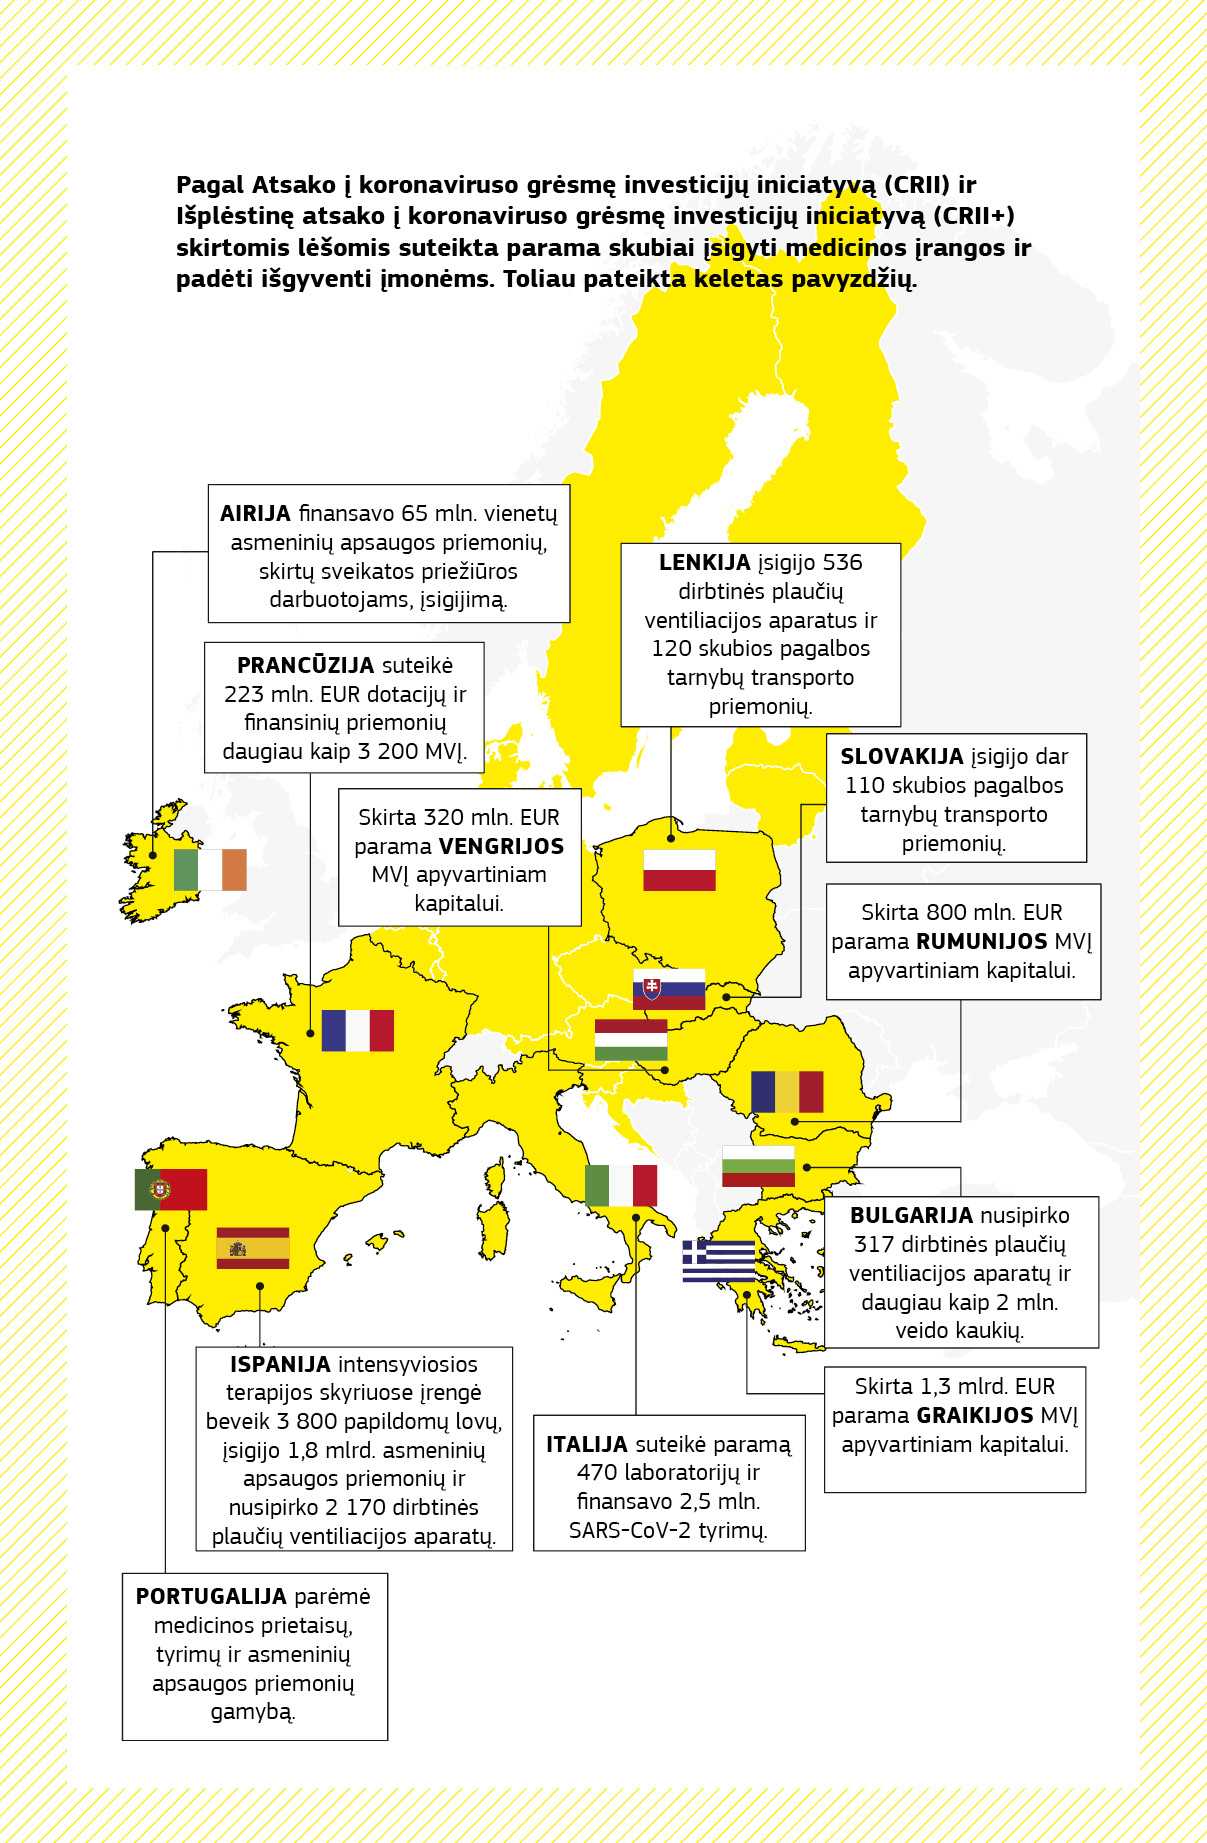 Žemėlapis, kuriame apibendrinami įvairūs paramos reaguojant į pandemiją projektai, finansuojami pagal Atsako į koronaviruso grėsmę investicijų iniciatyvą ir Išplėstinę atsako į koronaviruso grėsmę investicijų iniciatyvą įvairiose ES valstybėse narėse. 